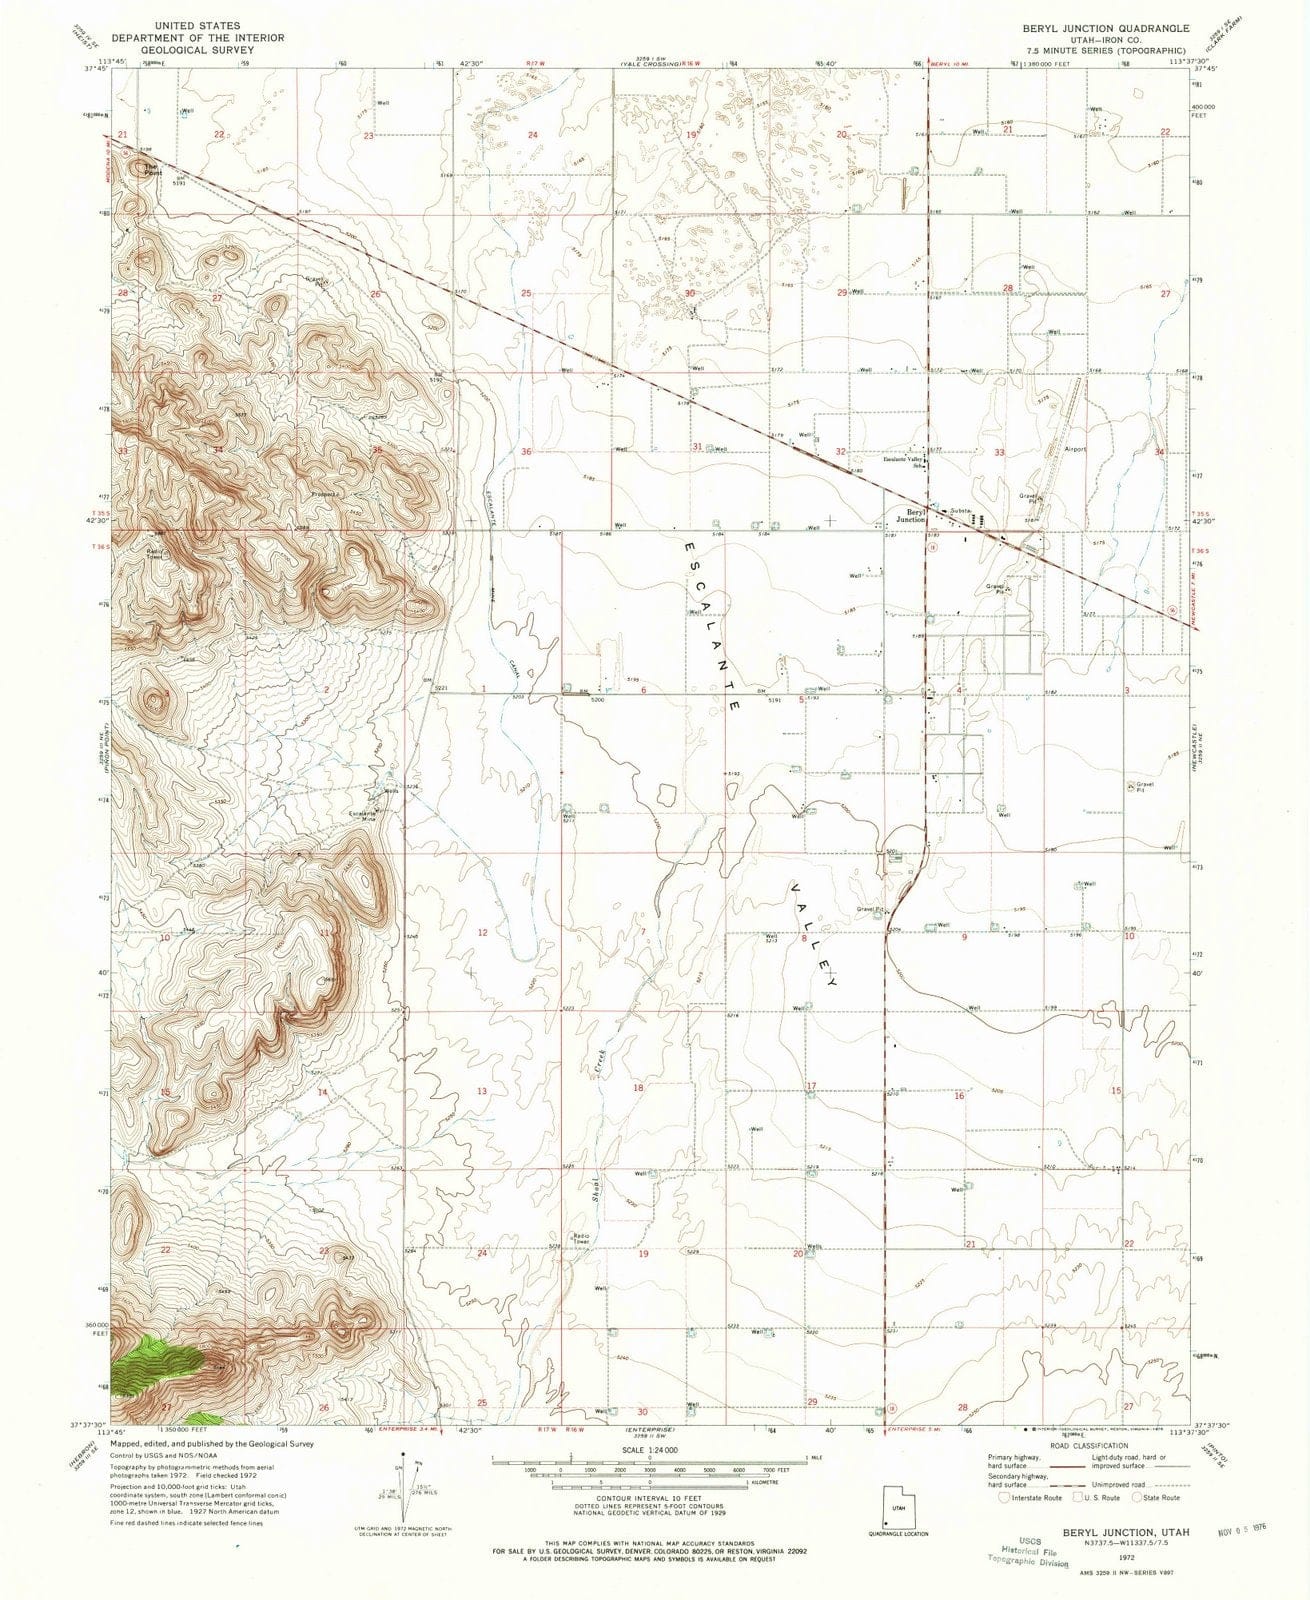 1972 Beryl Junction, UT - Utah - USGS Topographic Map